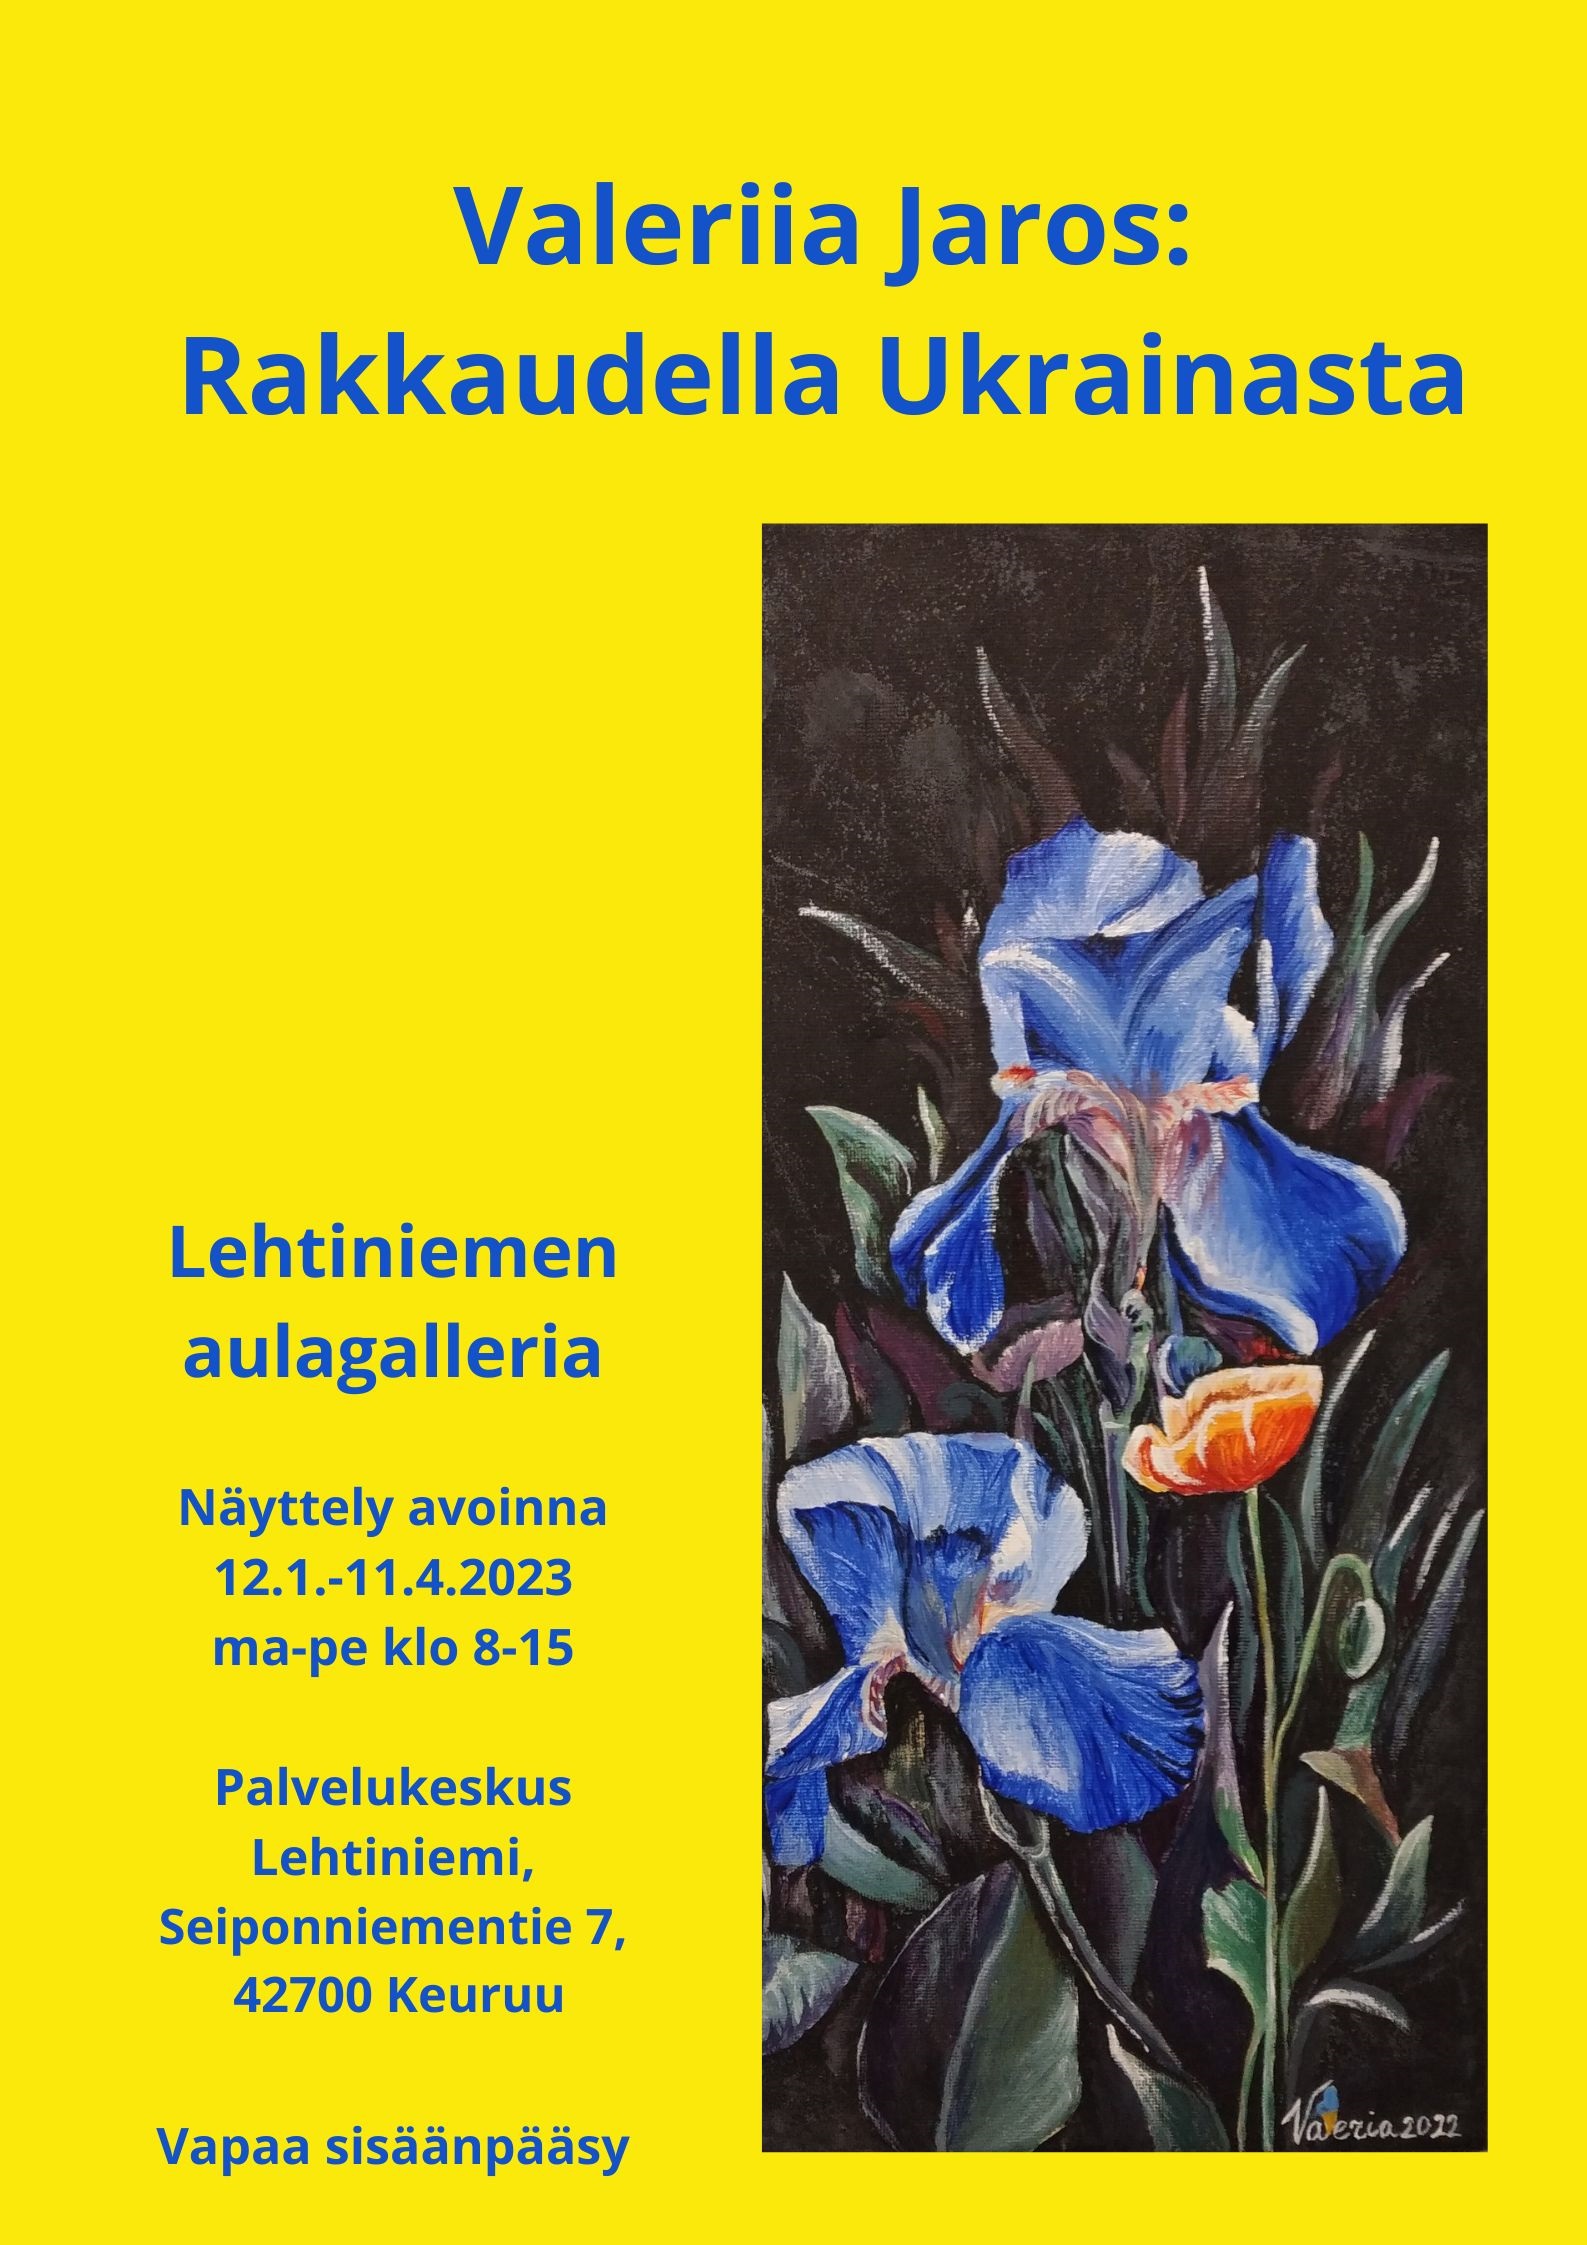 Lehtiniemen Aulagalleria: Valeriia Jaros, Rakkaudella Ukrainasta 12.1. - 11.4.2023